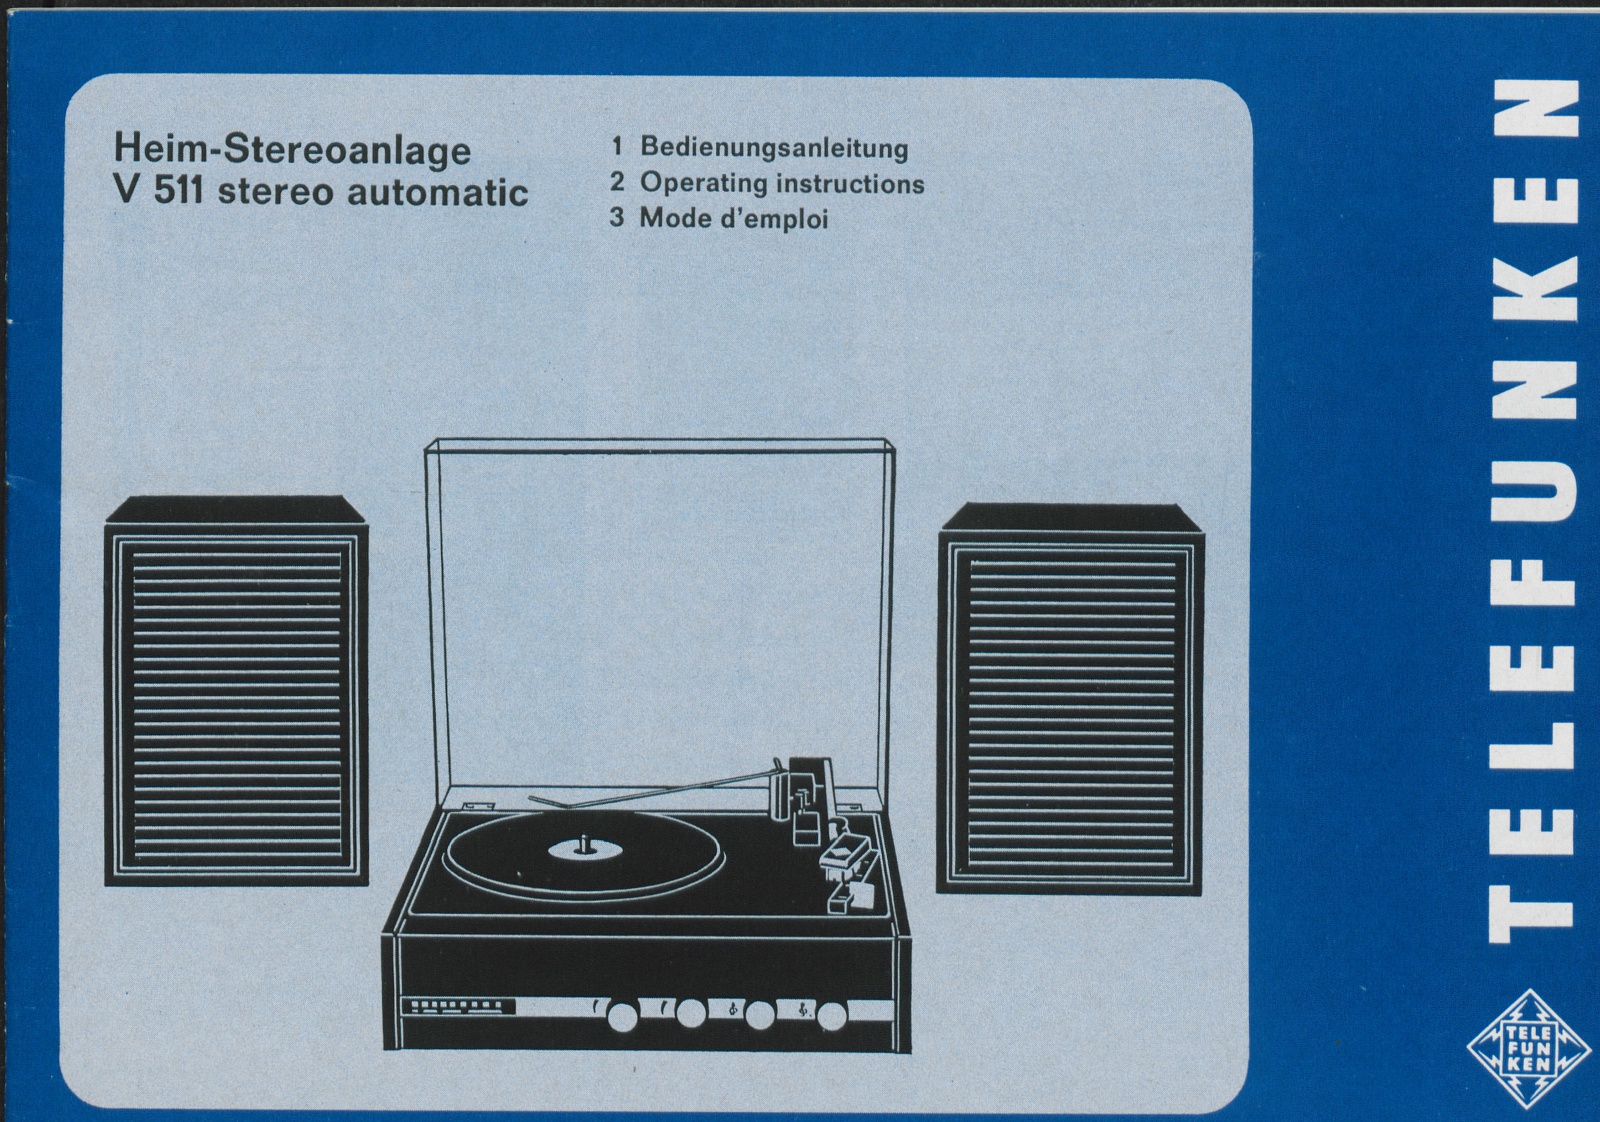 Bedienungsanleitung: Bedienungsanleitung Telefunken Heim - Stereoanlage V 511 stereo automatic (Stiftung Deutsches Technikmuseum Berlin CC0)